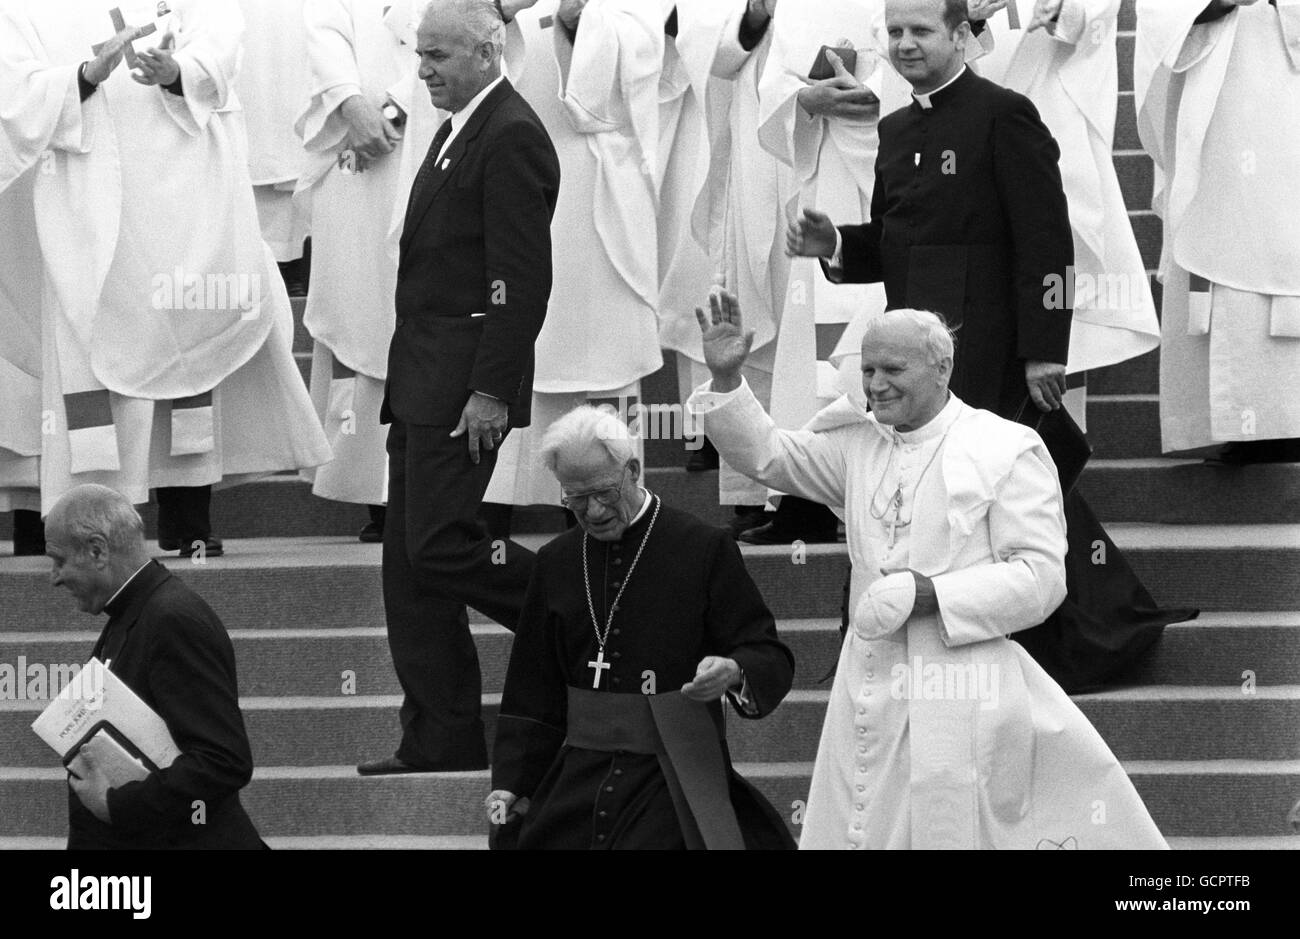 Après l'archevêque de Canterbury, le cardinal Robert Runcie descend les marches, le pape Jean-Paul II se dirige vers la foule du parc Heaton, après avoir conduit la messe en plein air. Banque D'Images